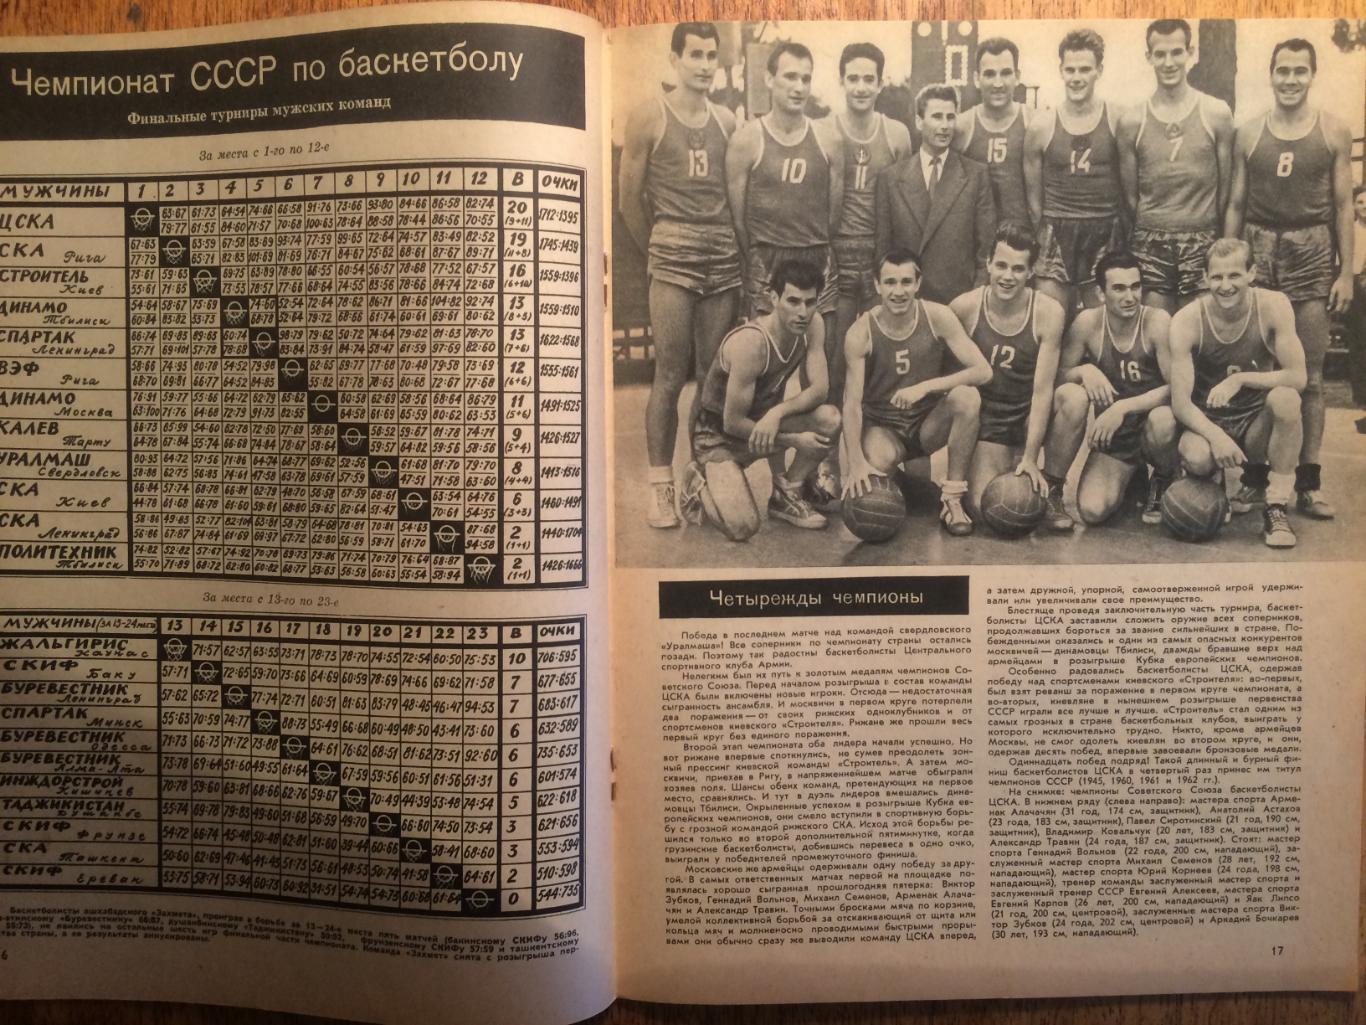 Журнал Спортивные игры №9 1962 1